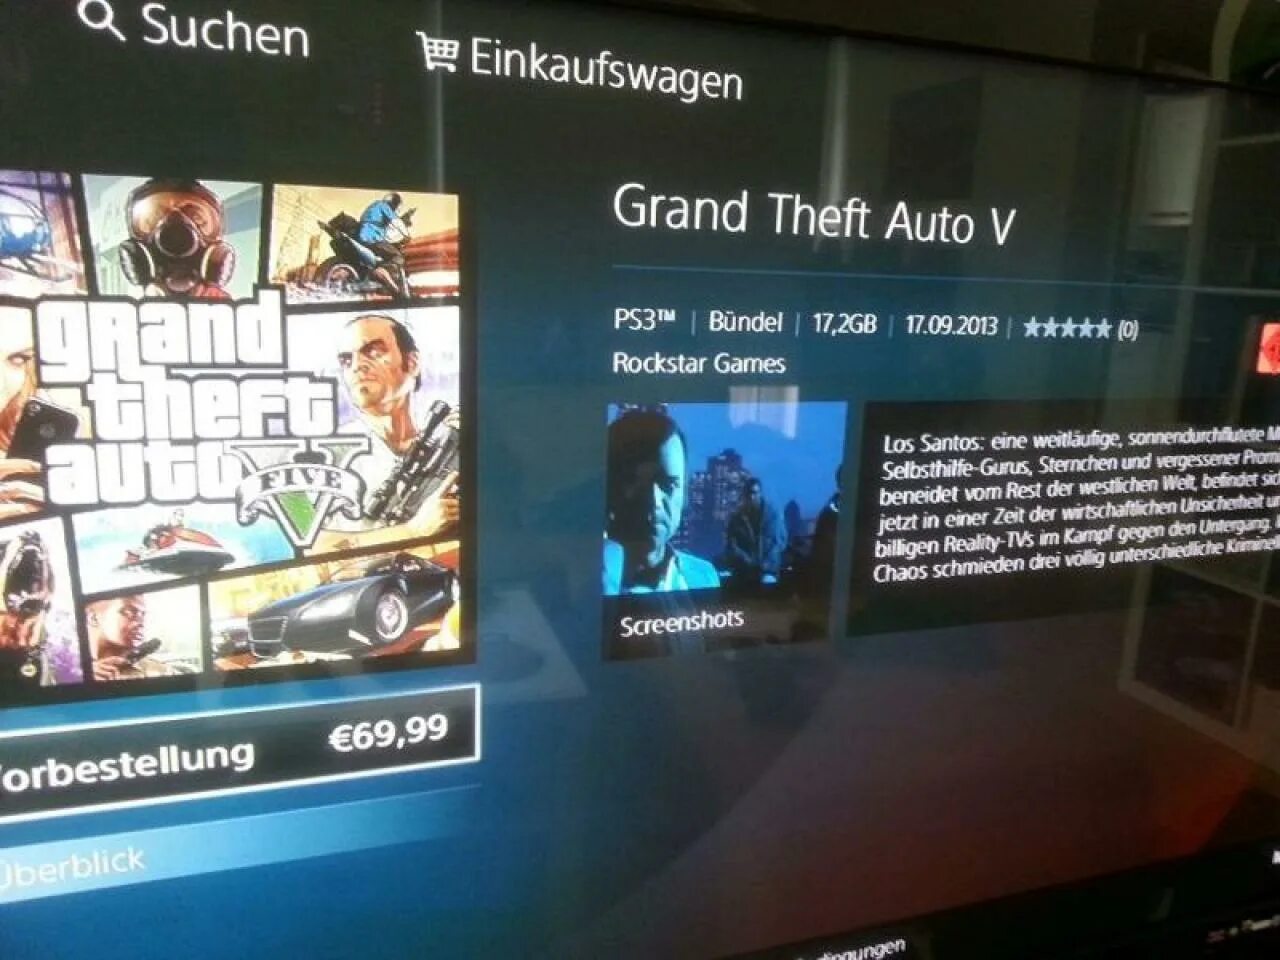 Пс стор 5. Коллекционное издание ps3 Grand Theft auto 5. PLAYSTATION Store GTA 4. ГТА 5 ПС 4 В ПС сторе. GTA 5 PLAYSTATION 4 Store.